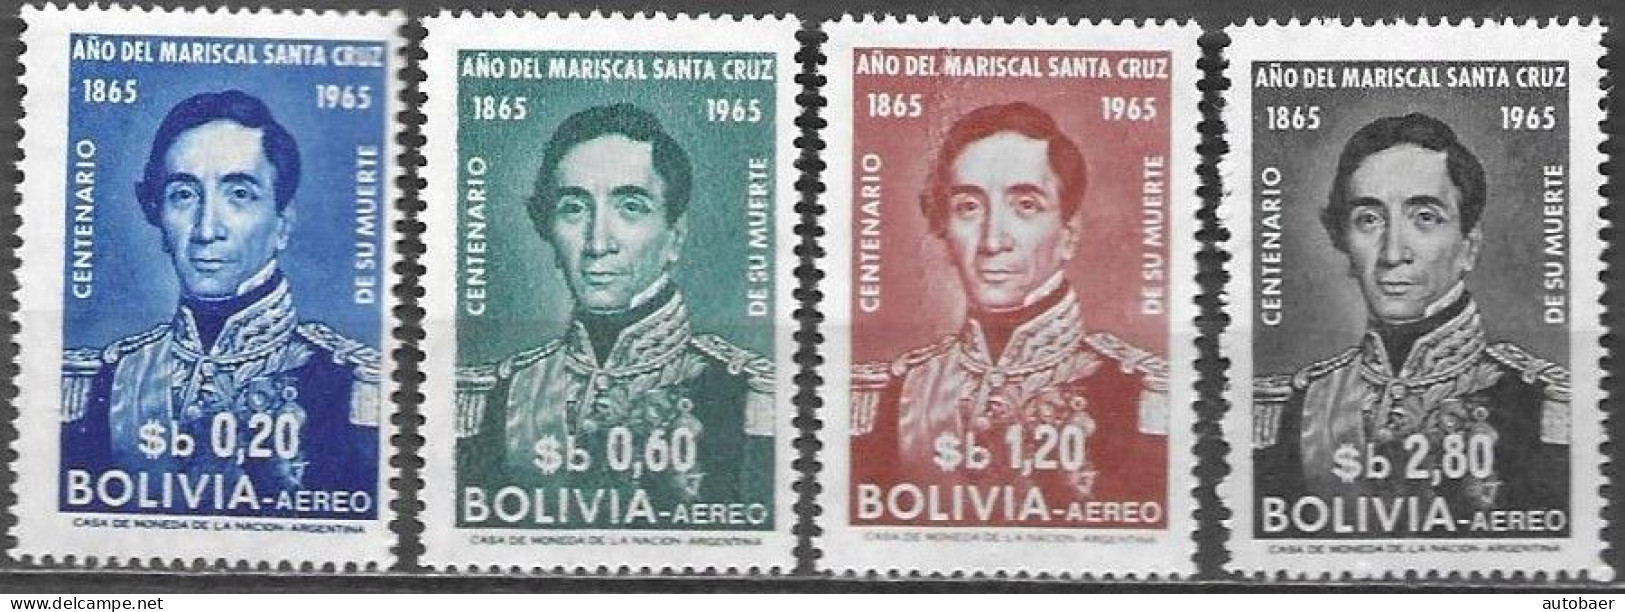 Bolivia Bolivie Bolivien 1966/1965 Mariscal Andres De Santa Cruz Michel No. 709-12 MNH Mint Postfrisch Neuf ** - Bolivie